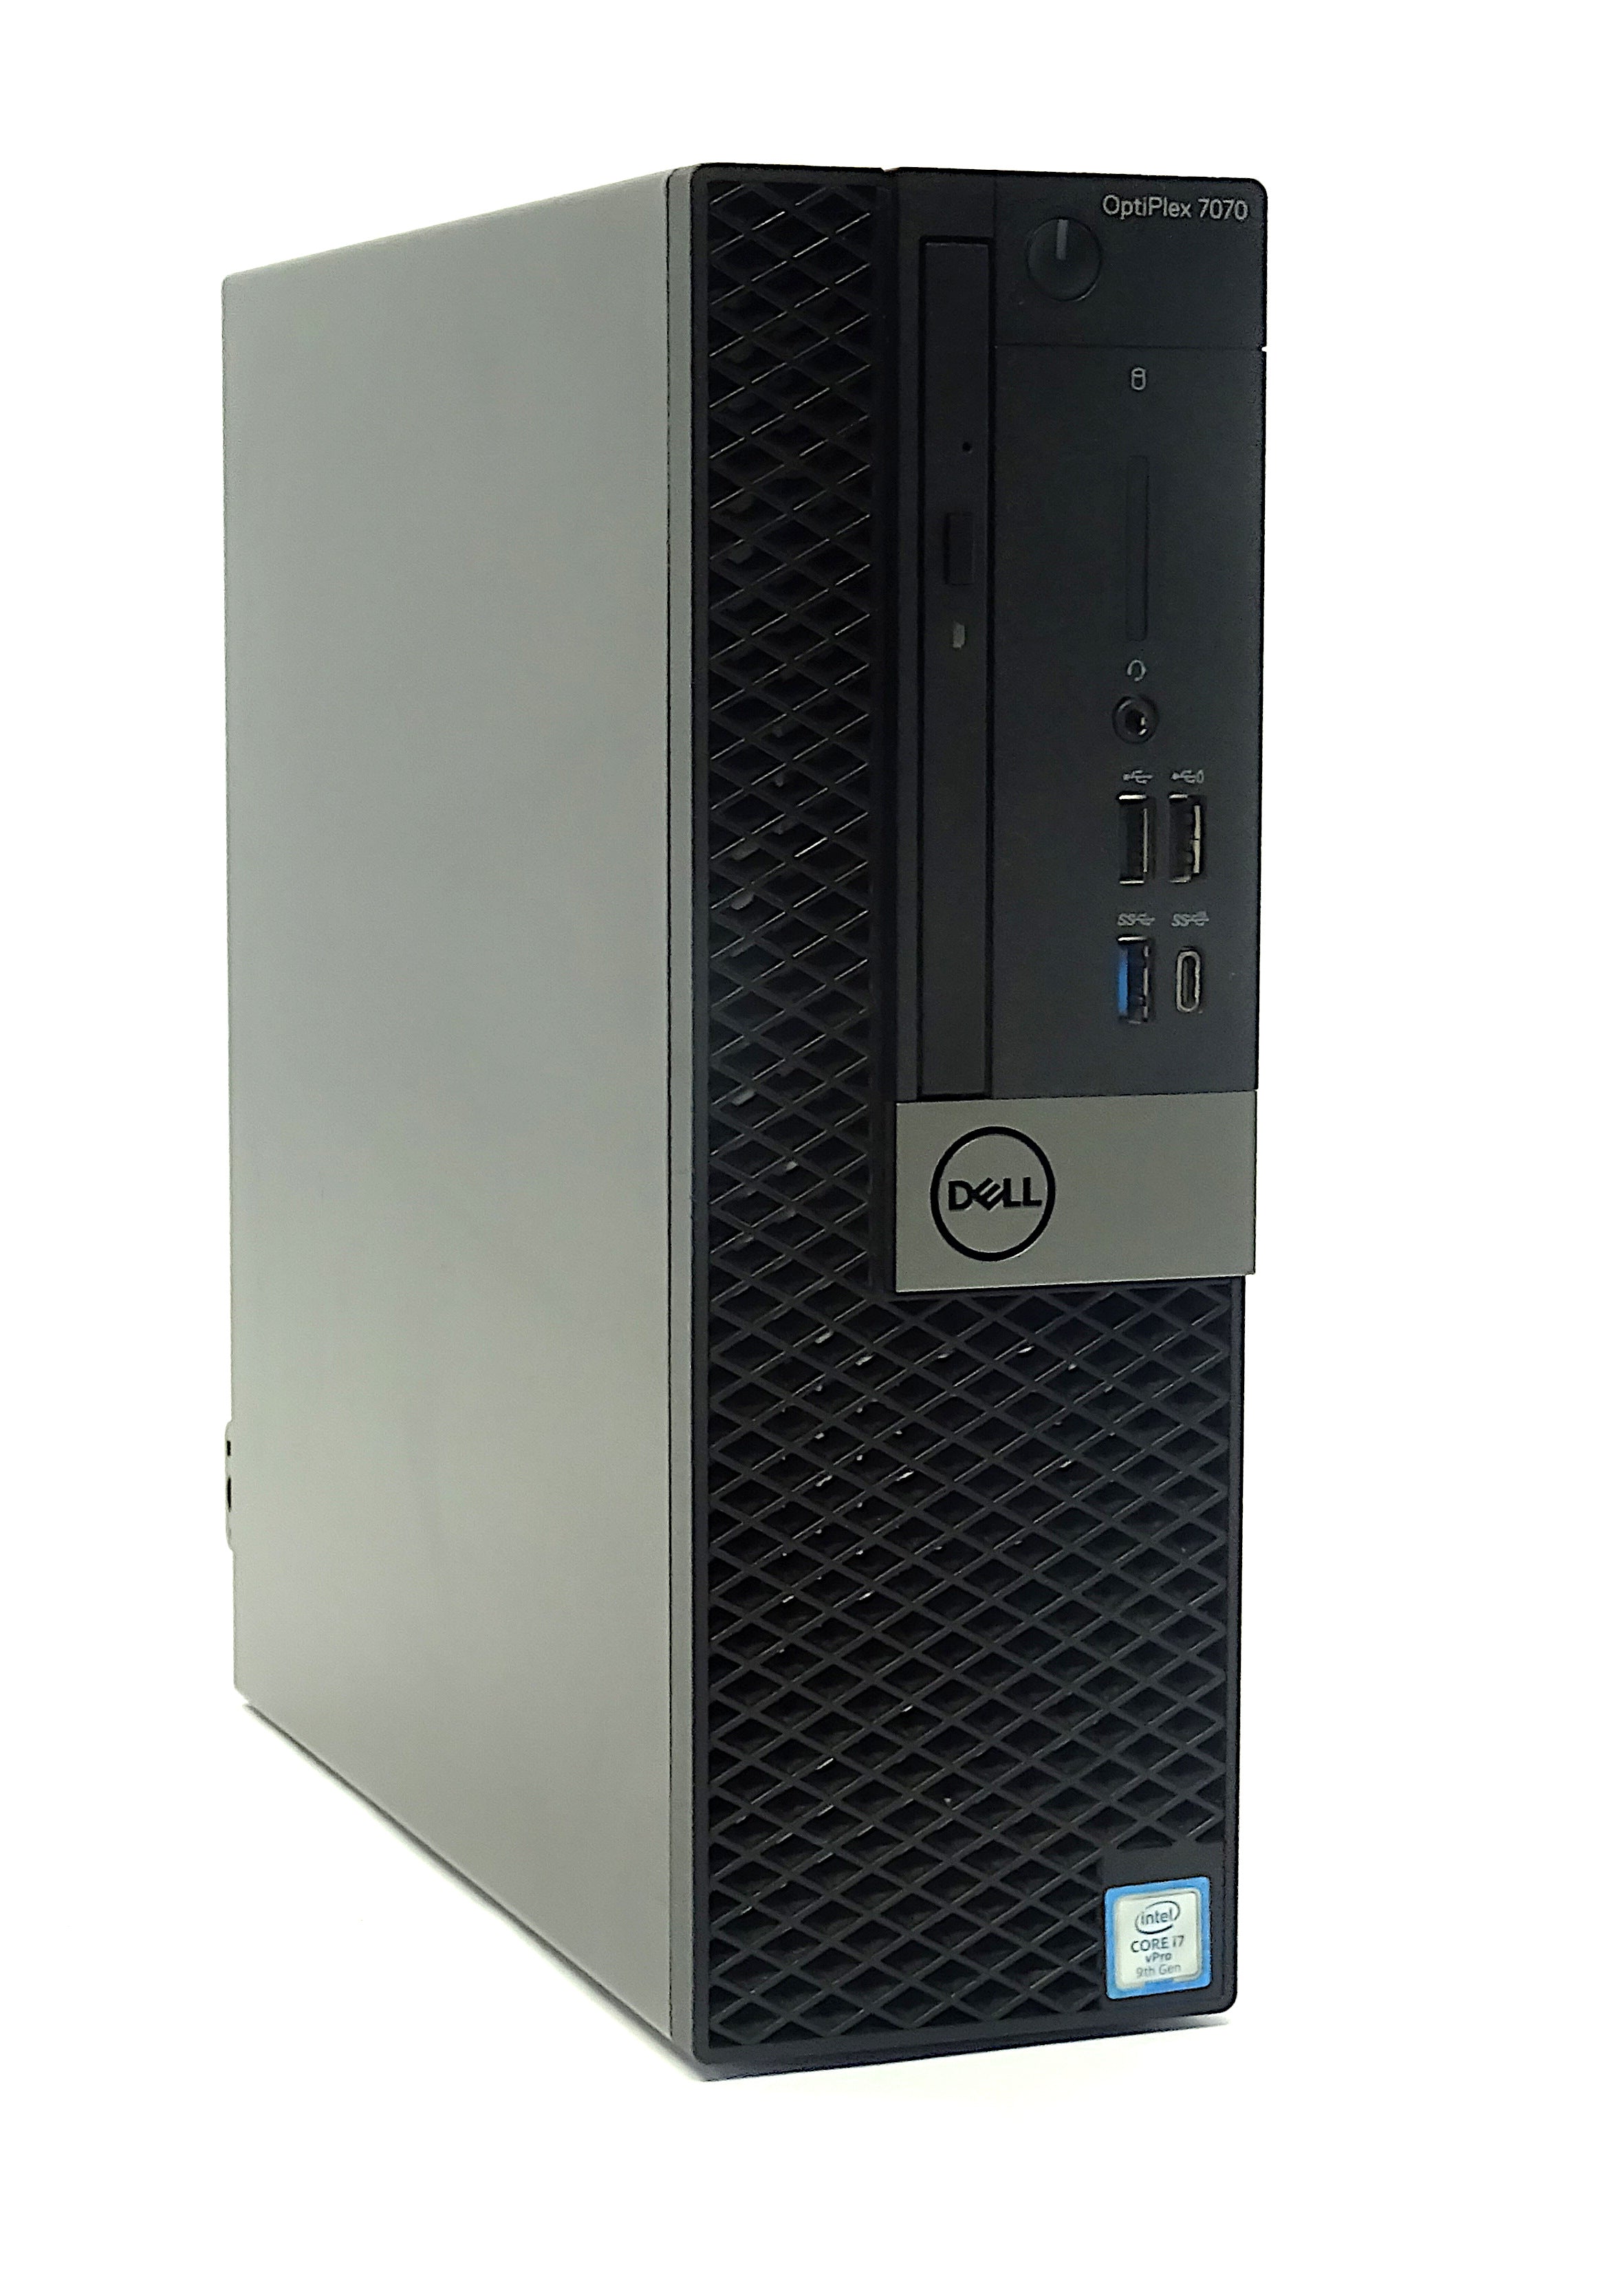 Dell Optiplex 7070 Desktop PC, Intel Core i7, 16GB RAM, 256GB SSD, Windows 10